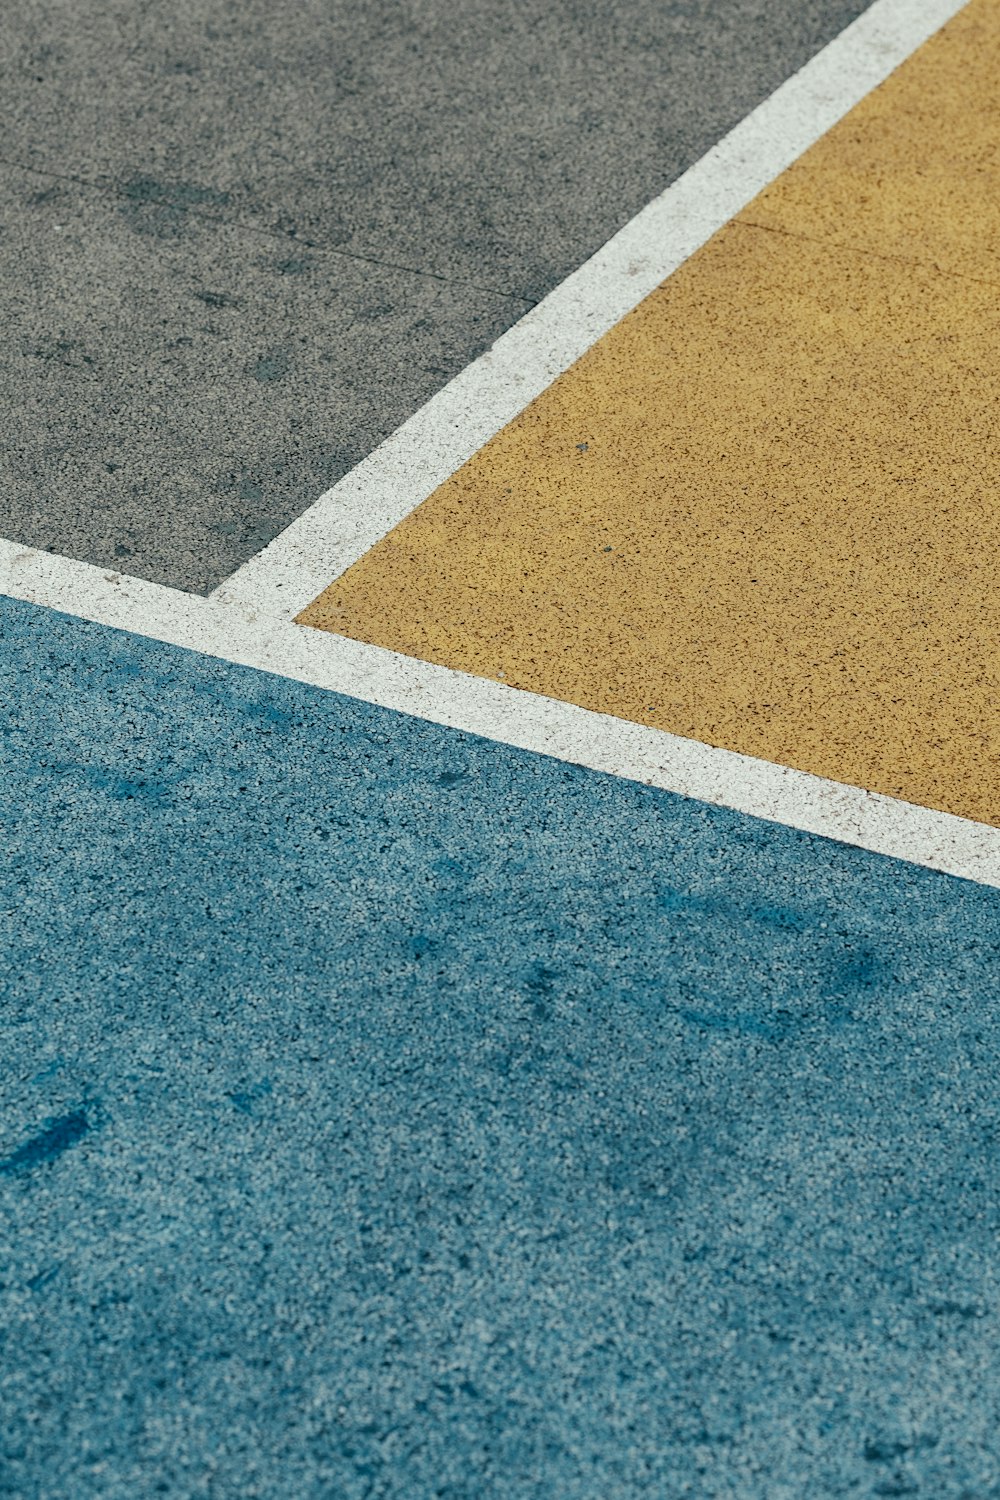 gros plan sur la chaussée peinte en gris, jaune et bleu